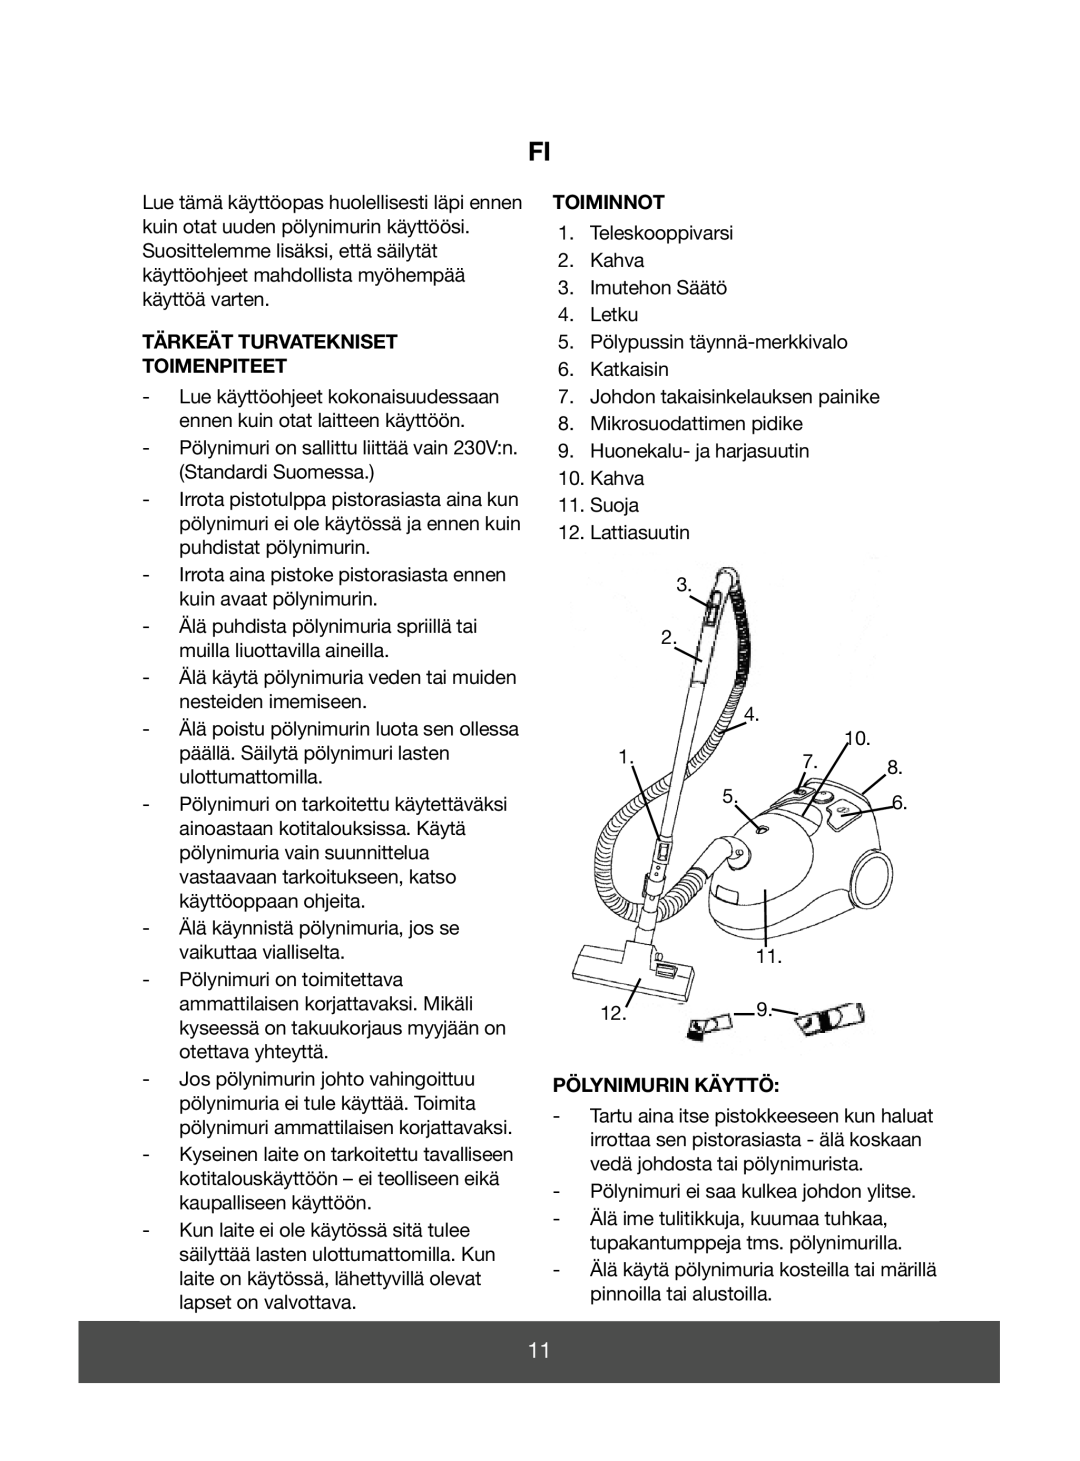 Melissa 640-050, 640-055 manual Tärkeät Turvatekniset Toimenpiteet, Toiminnot, Pölynimurin Käyttö 